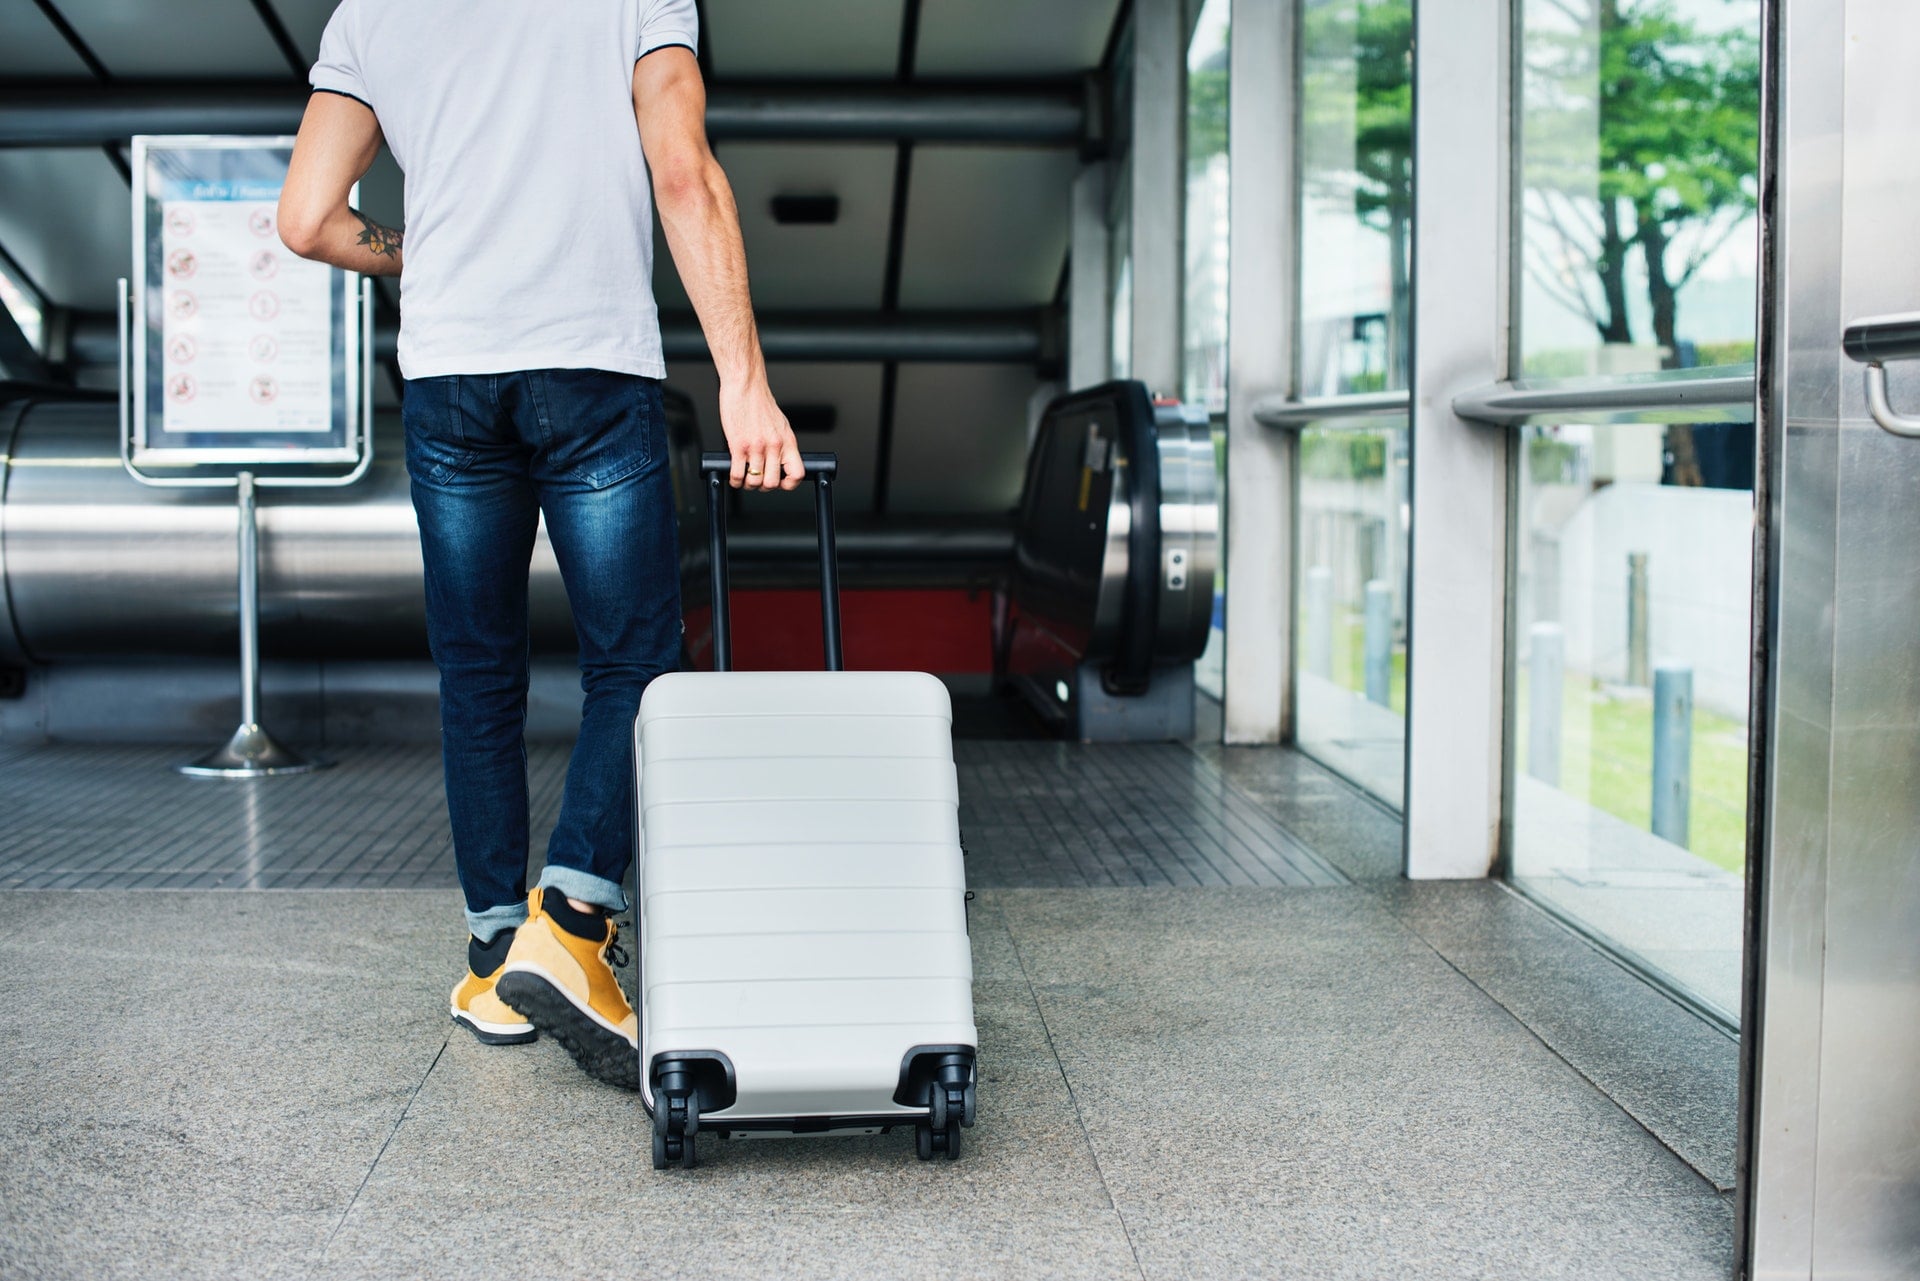 日本 JR 新幹線：攜帶大行李箱上車先預約 2020 搭乘新規定 travel Hand luggage checked baggage station airport